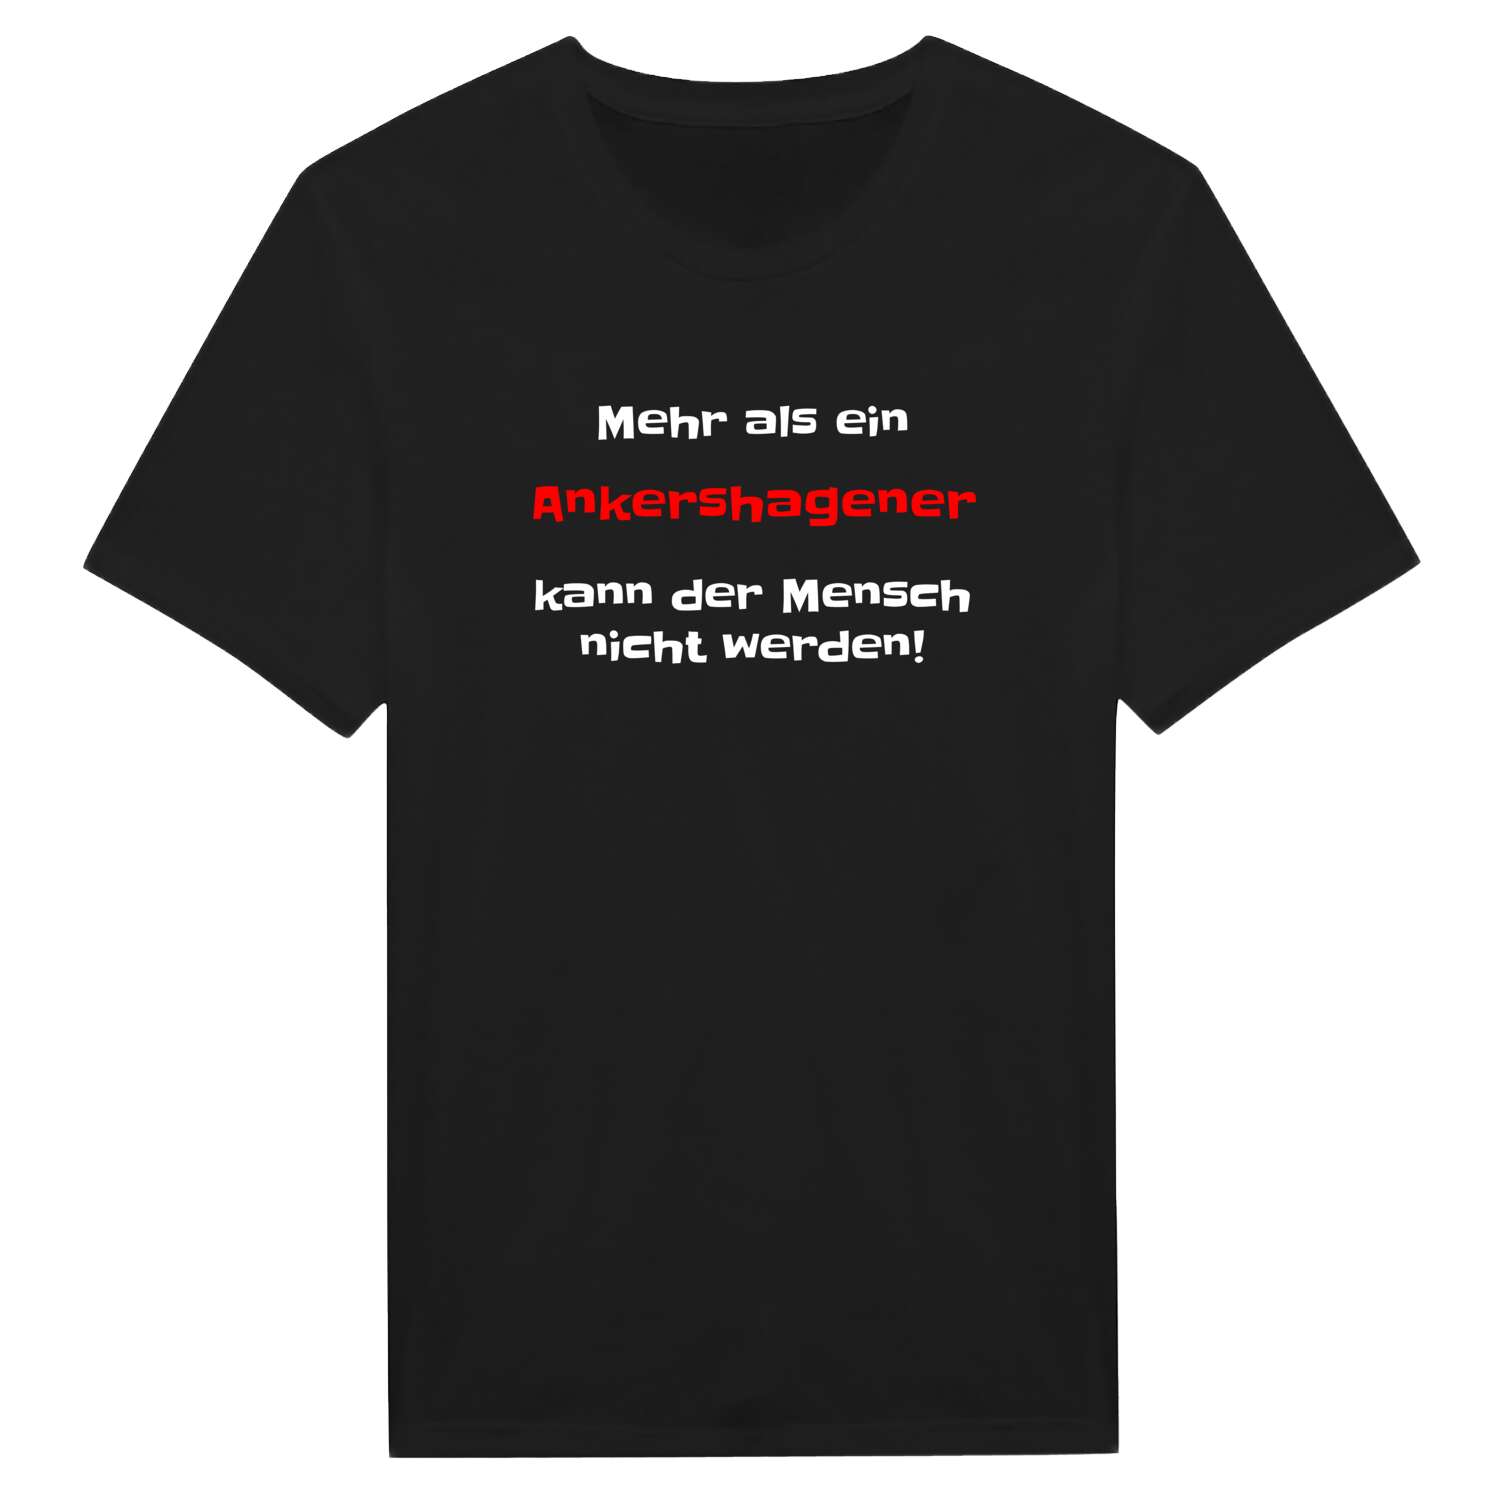 Ankershagen T-Shirt »Mehr als ein«